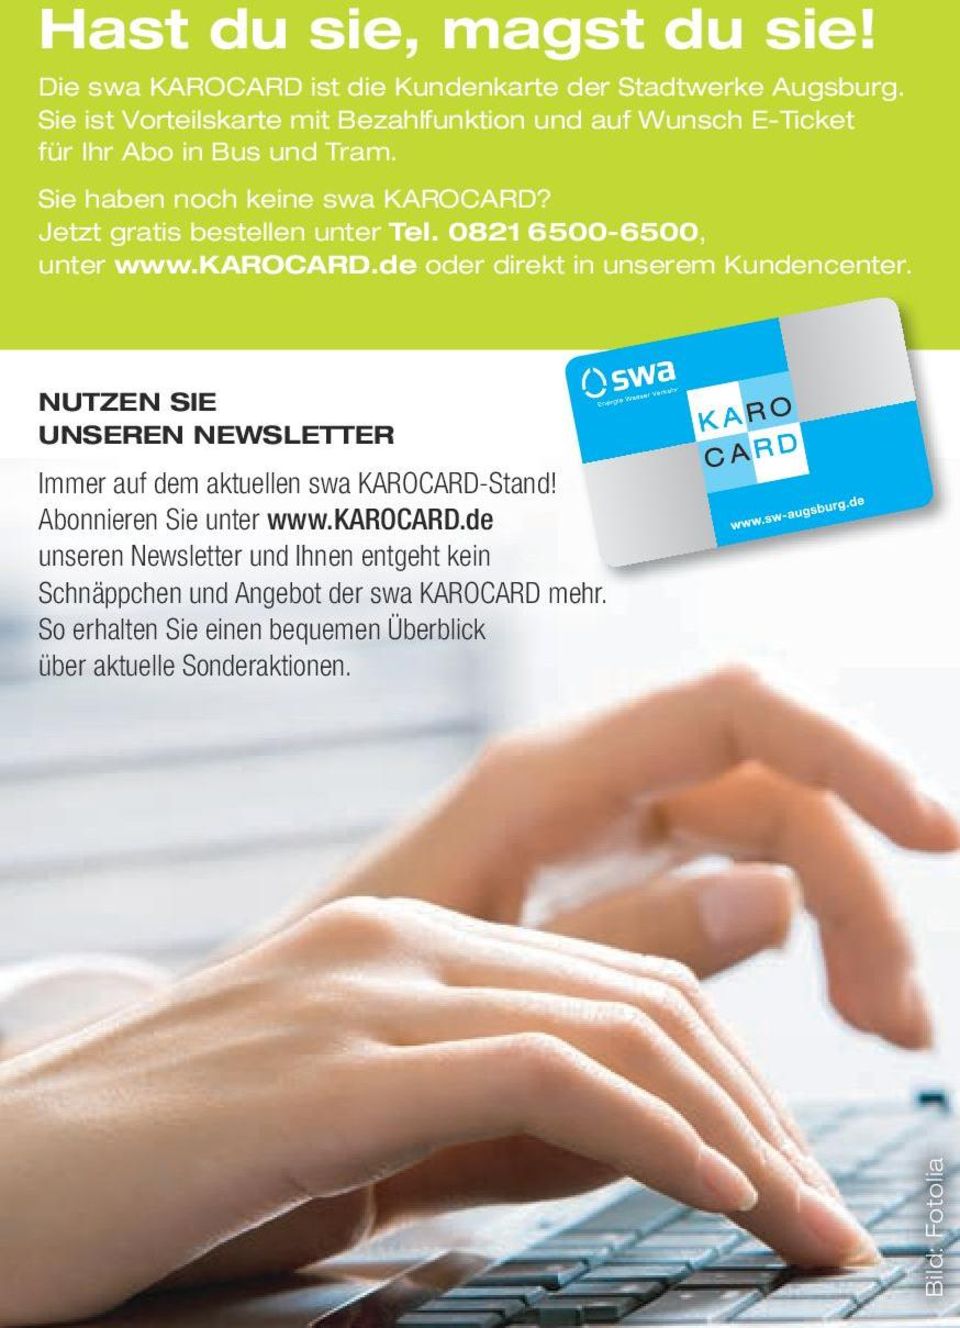 Jetzt gratis bestellen unter Tel. 0821 6500-6500, unter www.karocard.de oder direkt in unserem Kundencenter.